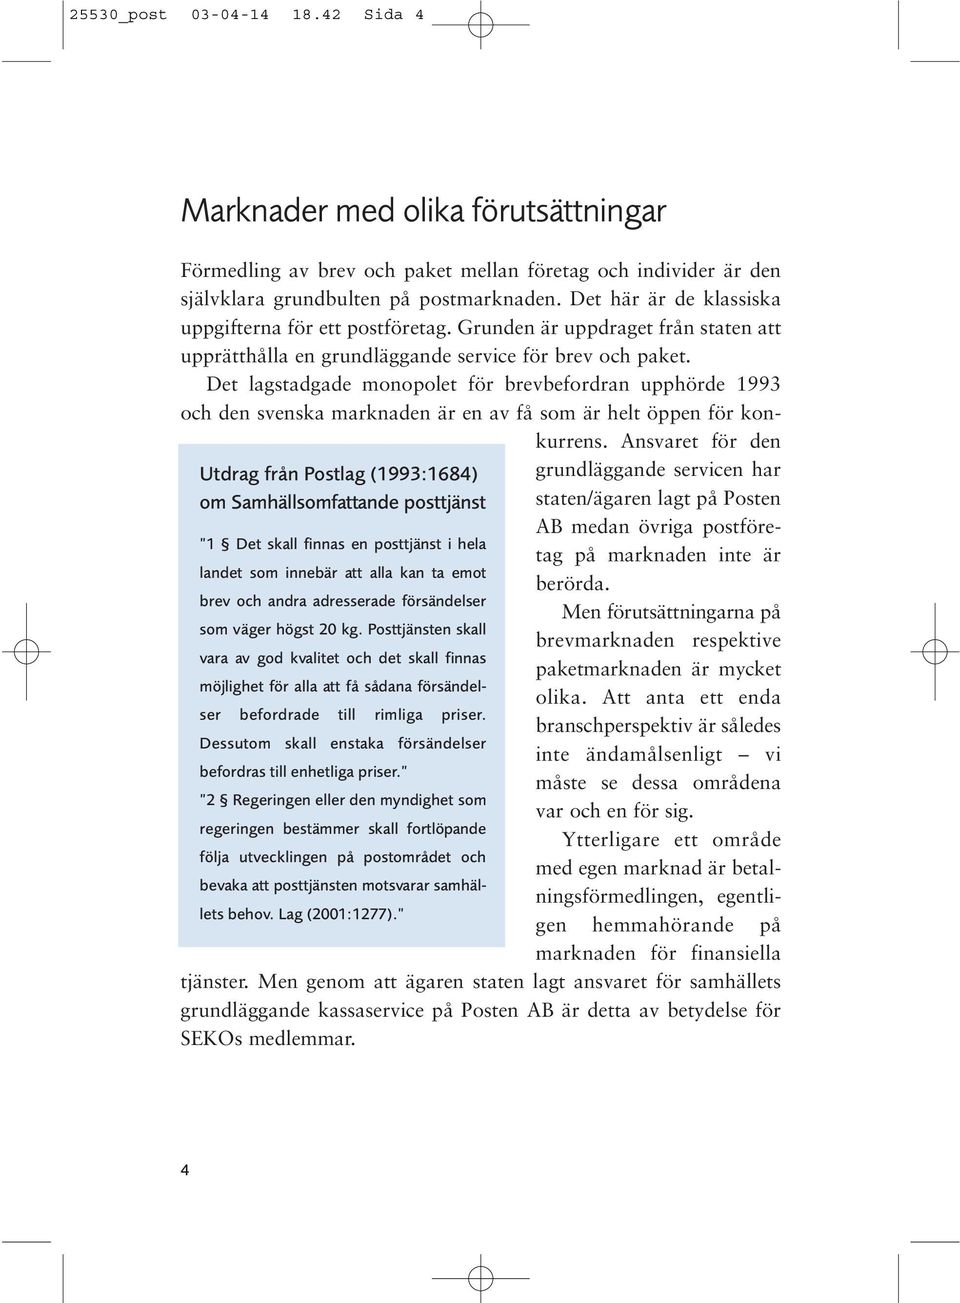 Det lagstadgade monopolet för brevbefordran upphörde 1993 och den svenska marknaden är en av få som är helt öppen för konkurrens.